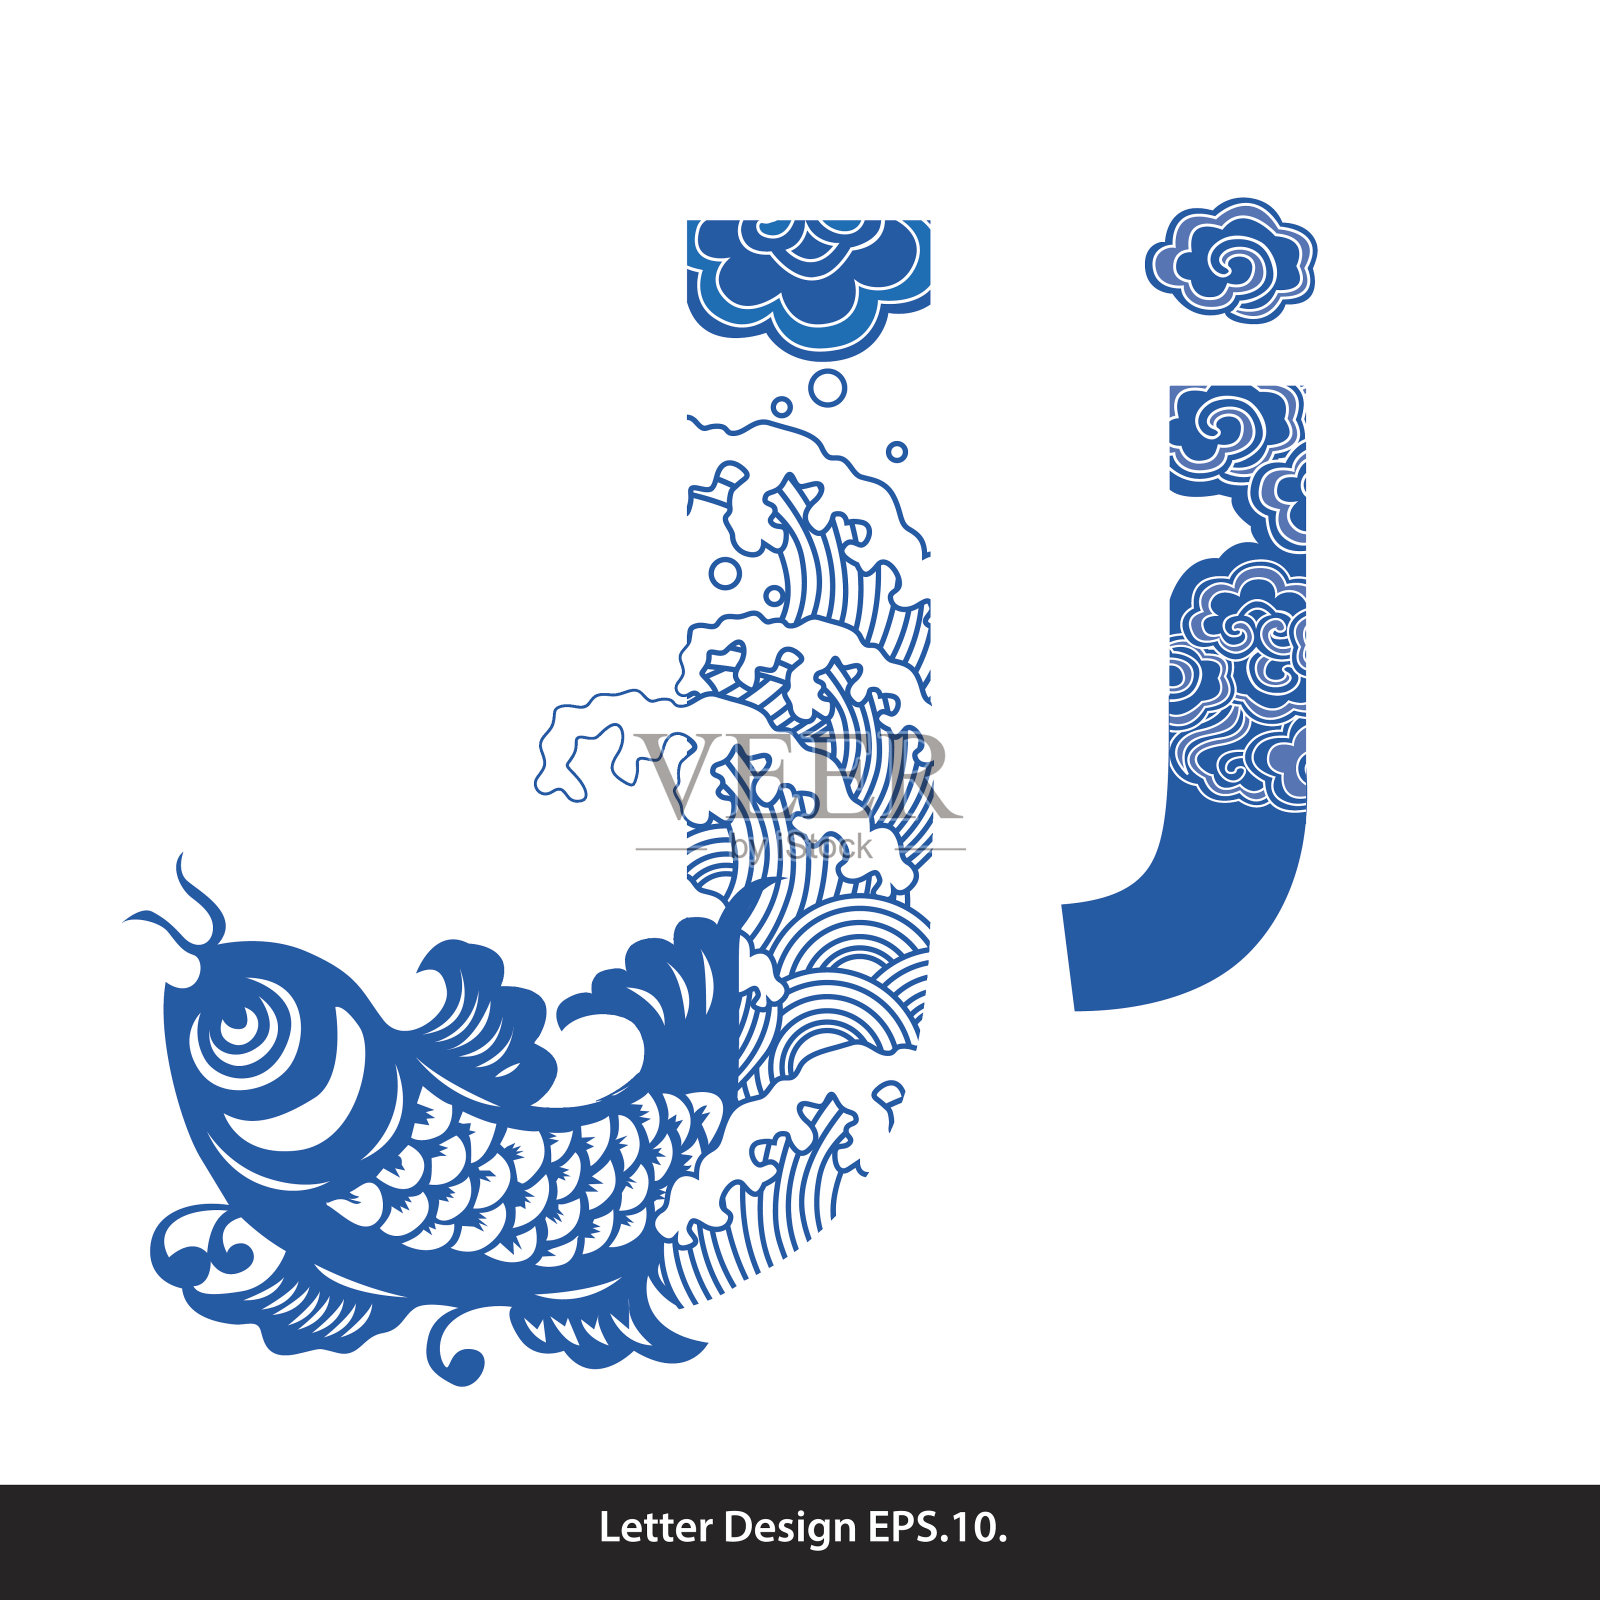 向量东方风格的字母磁带j繁体中文设计元素图片